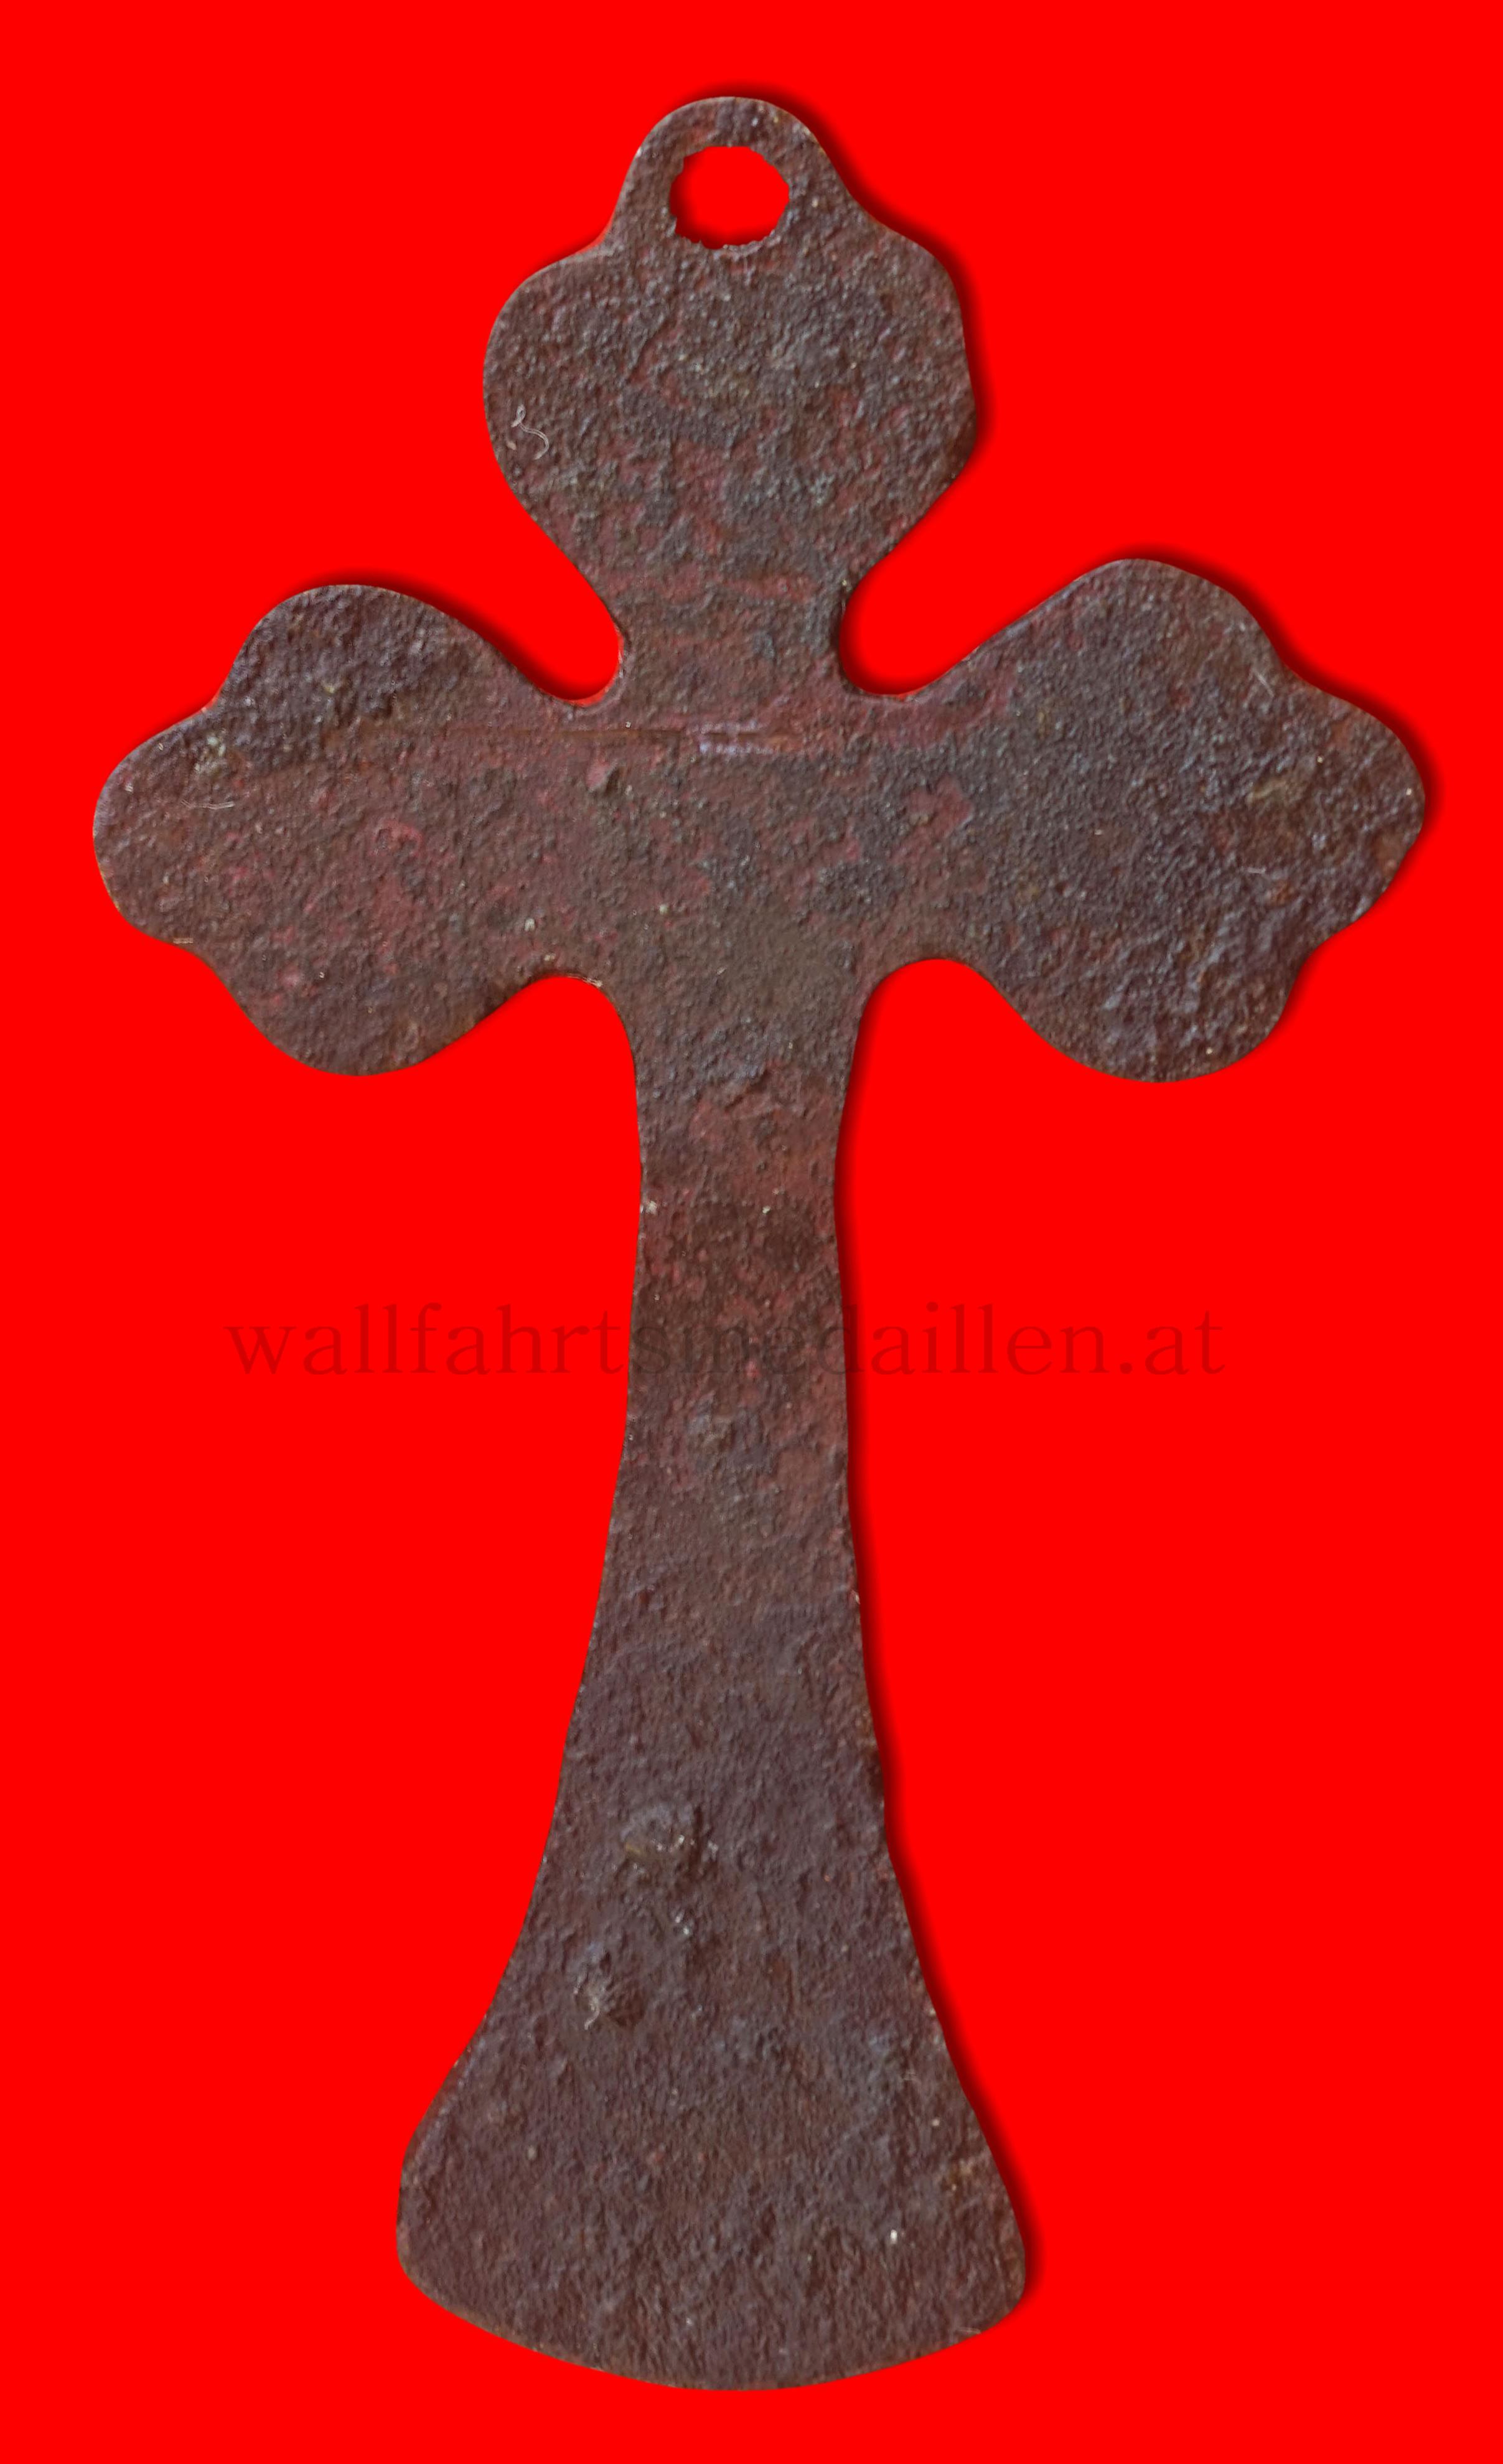   Wallfahrtskreuz aus Maria Zell  (Unter dem Gekreuzigten ist noch leicht das Gnadenbild von Maria Zell zu erkennen)  frühes XIX Jhd